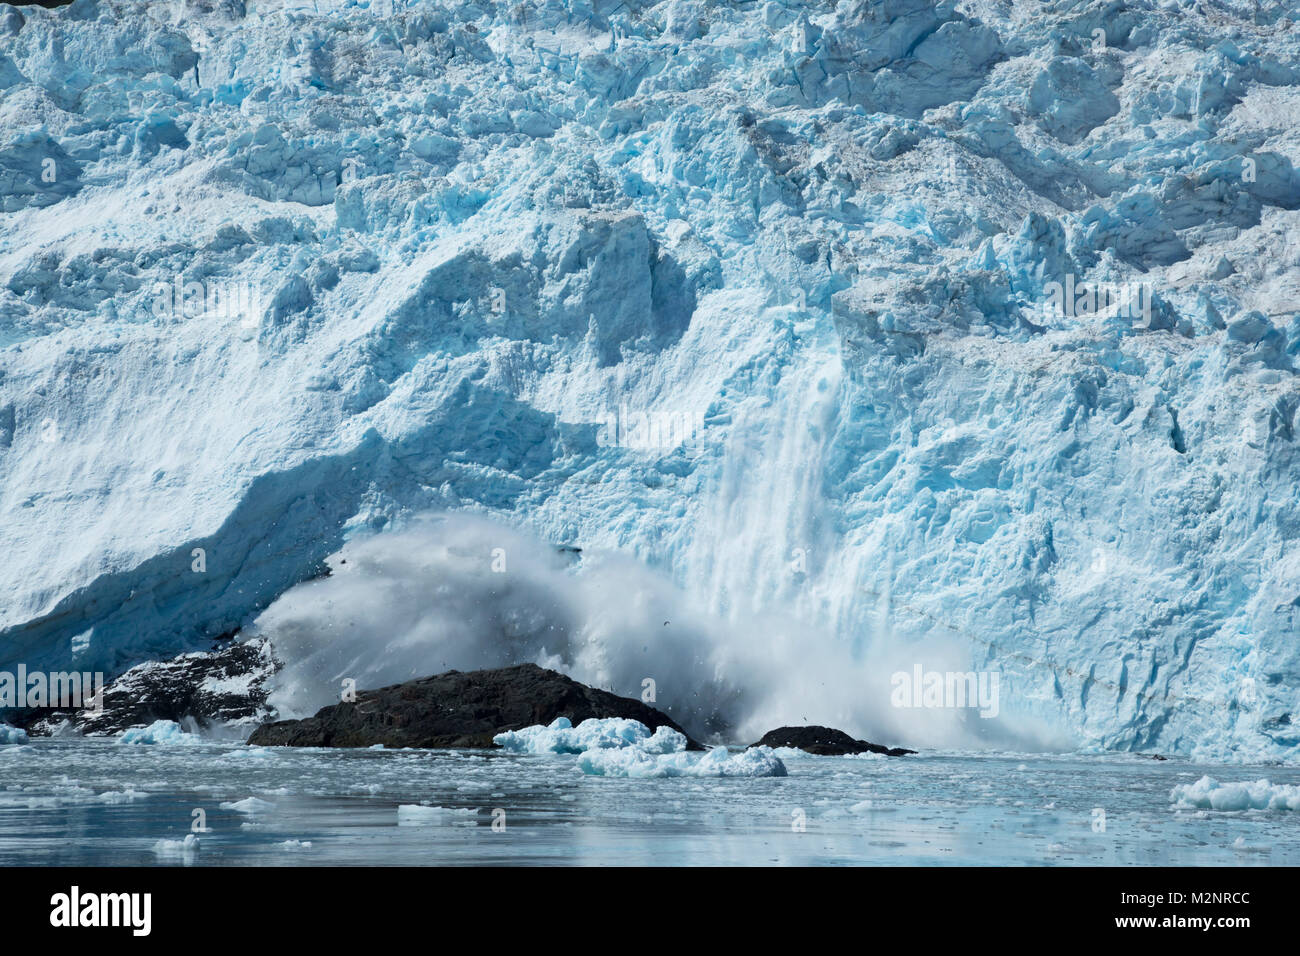 Geler une action spectaculaire glacier de vêlage, mur massif de chute de glace comme il éclabousse dans l'eau ci-dessous, la vue populaire au nord-ouest de l'Alaska États-unis Fjord Banque D'Images